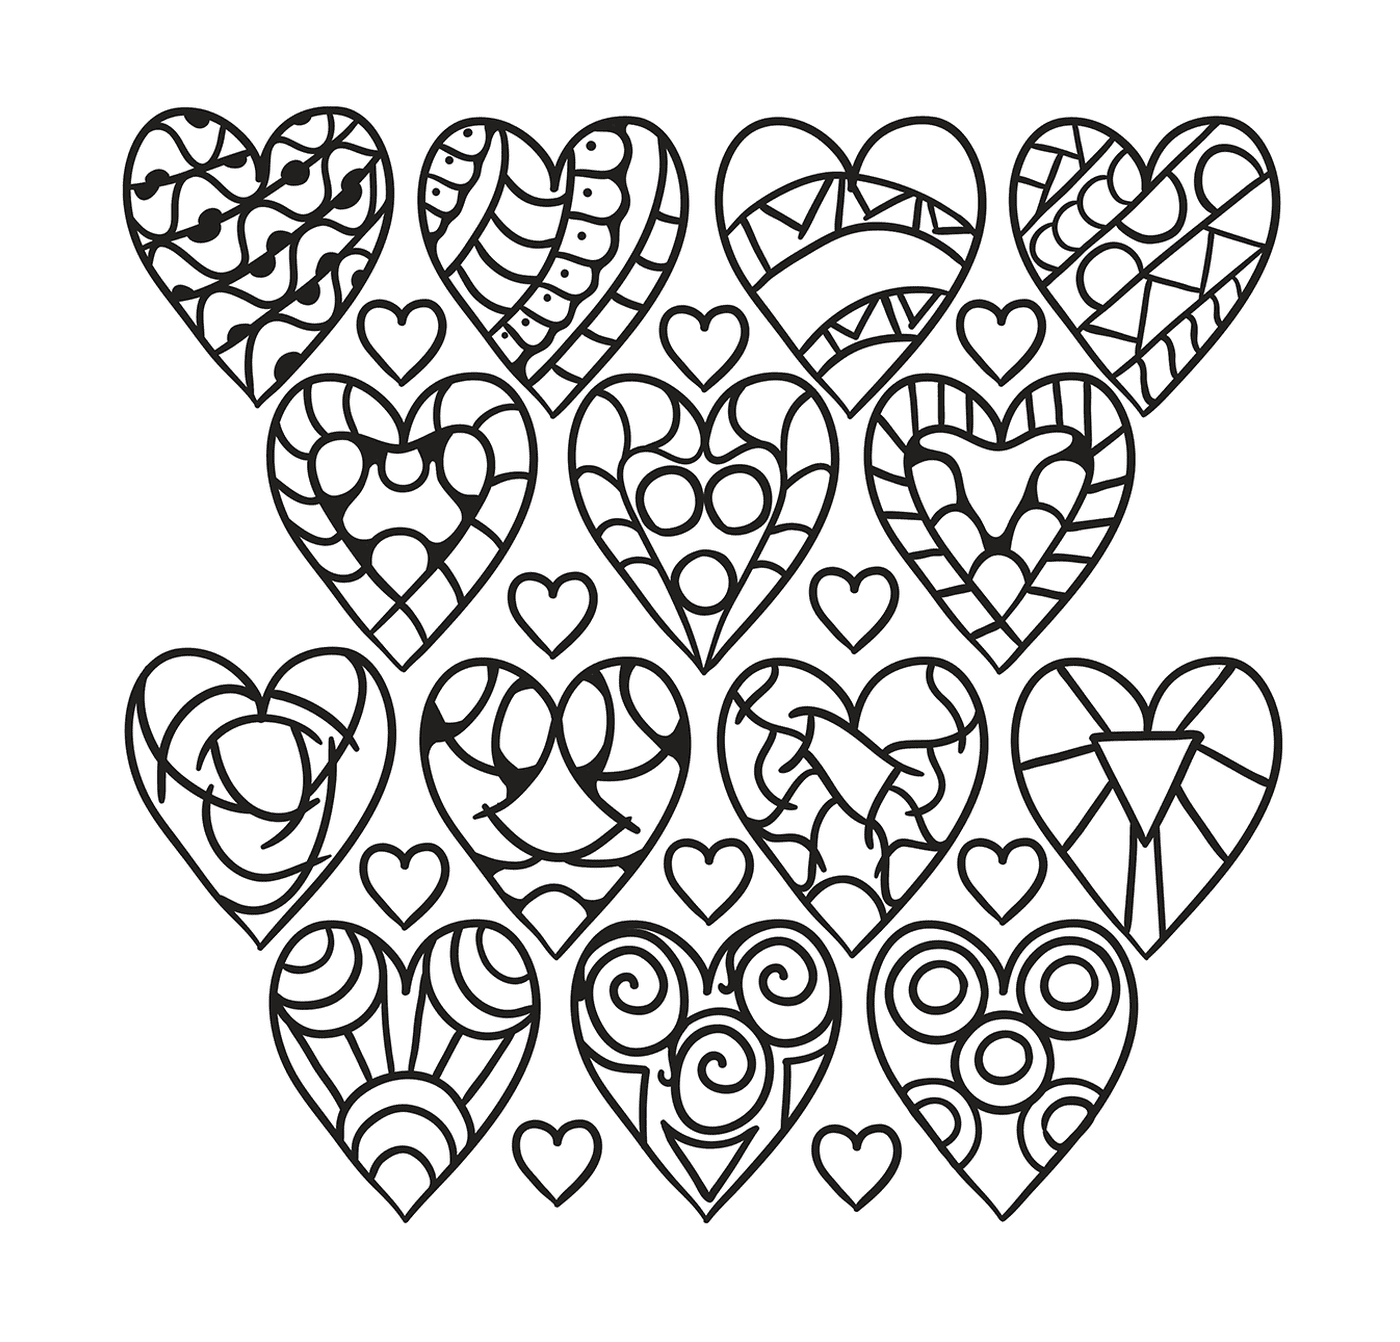  Коллекция сердец с различными формами 